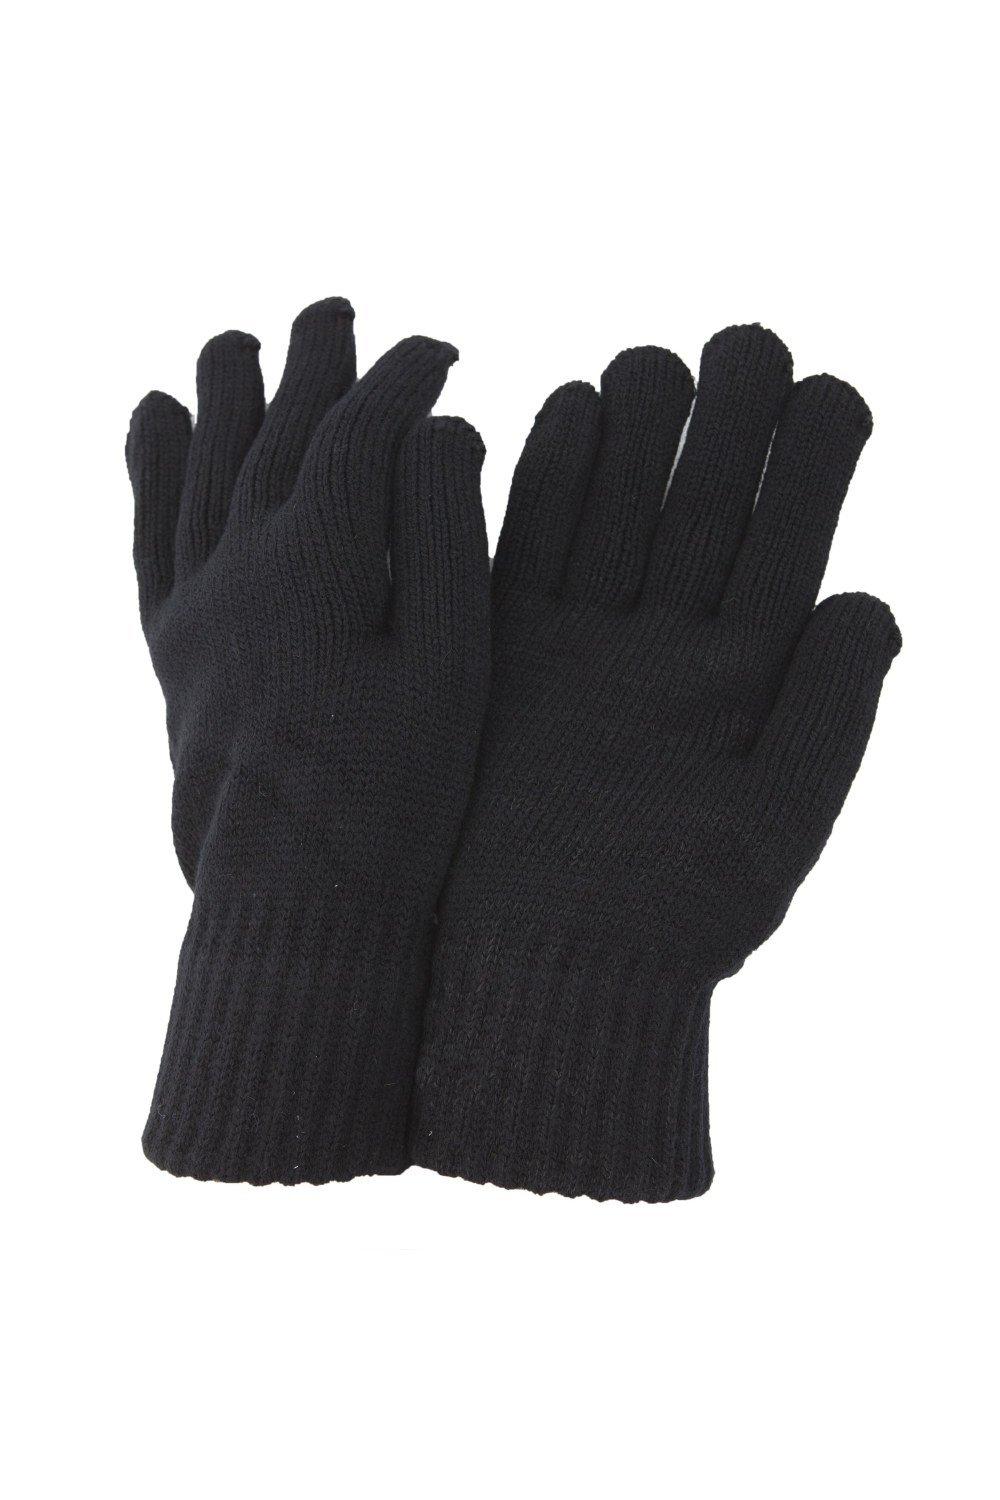 РАСПРОДАЖА - Термовязаные зимние перчатки Universal Textiles, черный